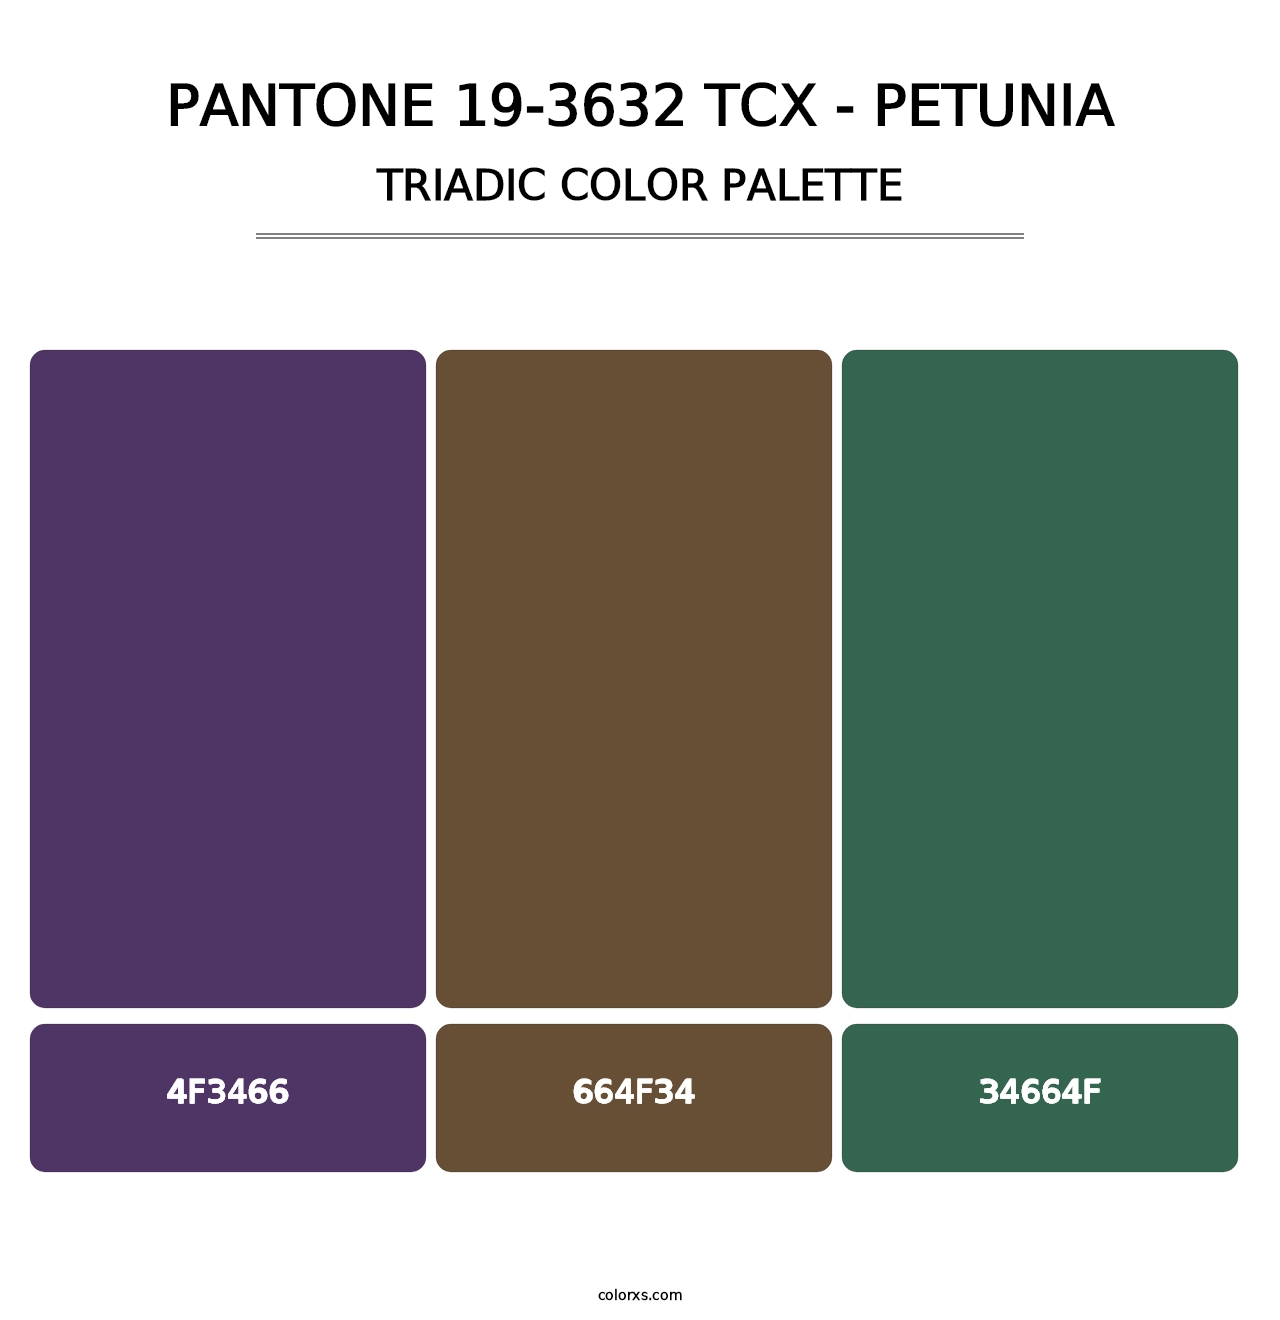 PANTONE 19-3632 TCX - Petunia - Triadic Color Palette